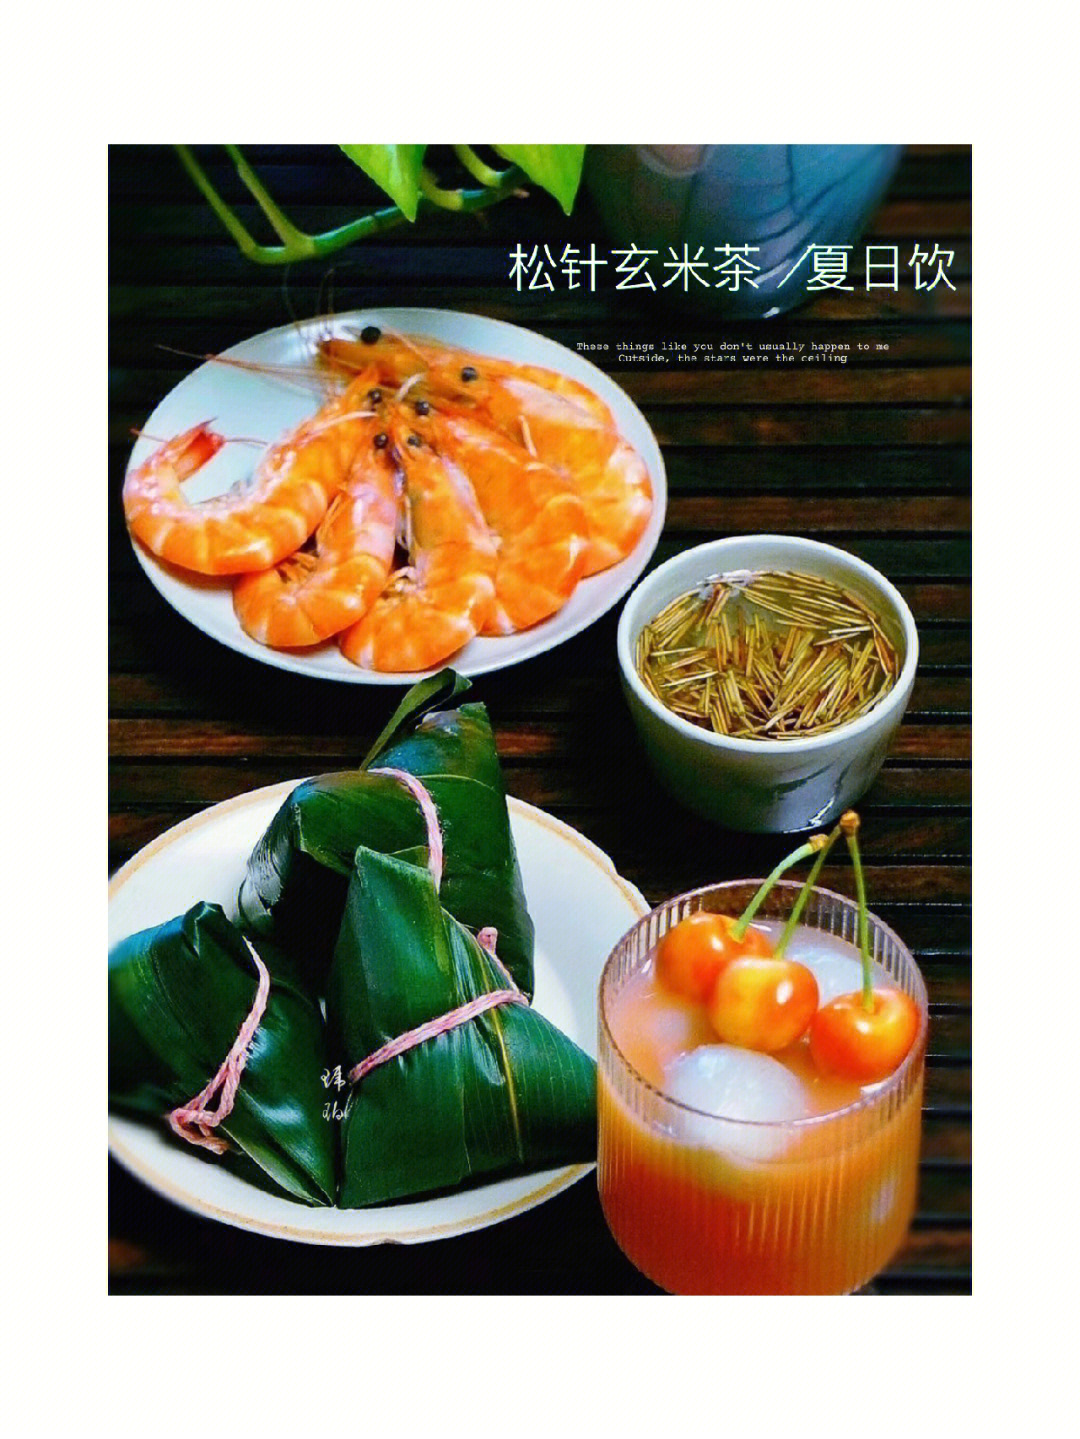 94松针米茶在日本有很多人在当保健品喝查资料发现李时珍亦已研究